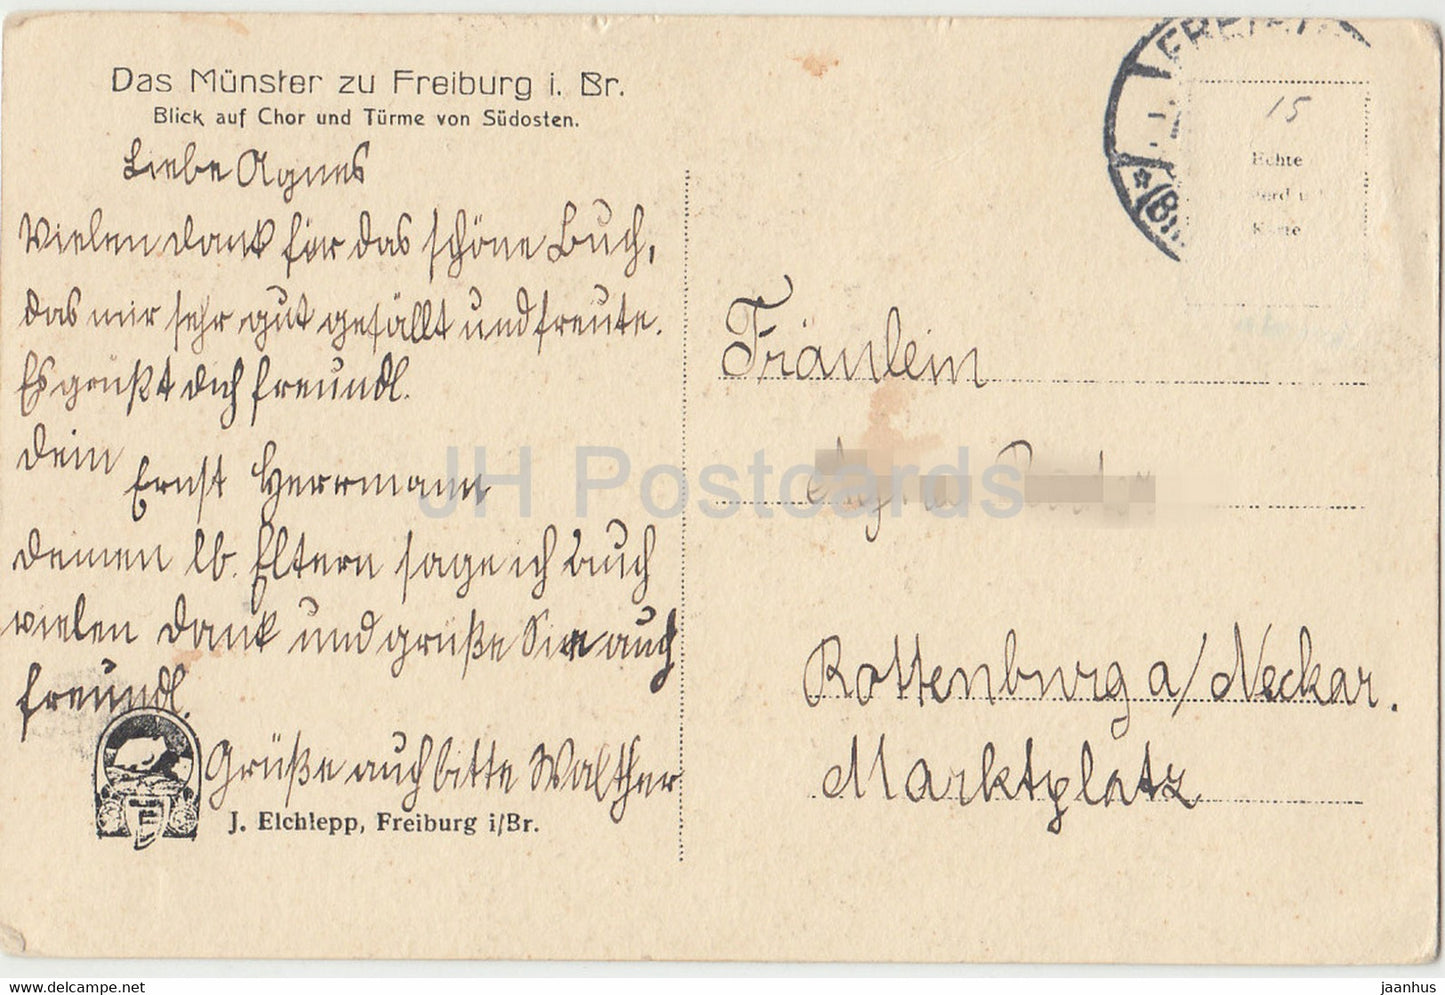 Das Munster zu Freiburg i Br - cathédrale - carte postale ancienne - Allemagne - inutilisée